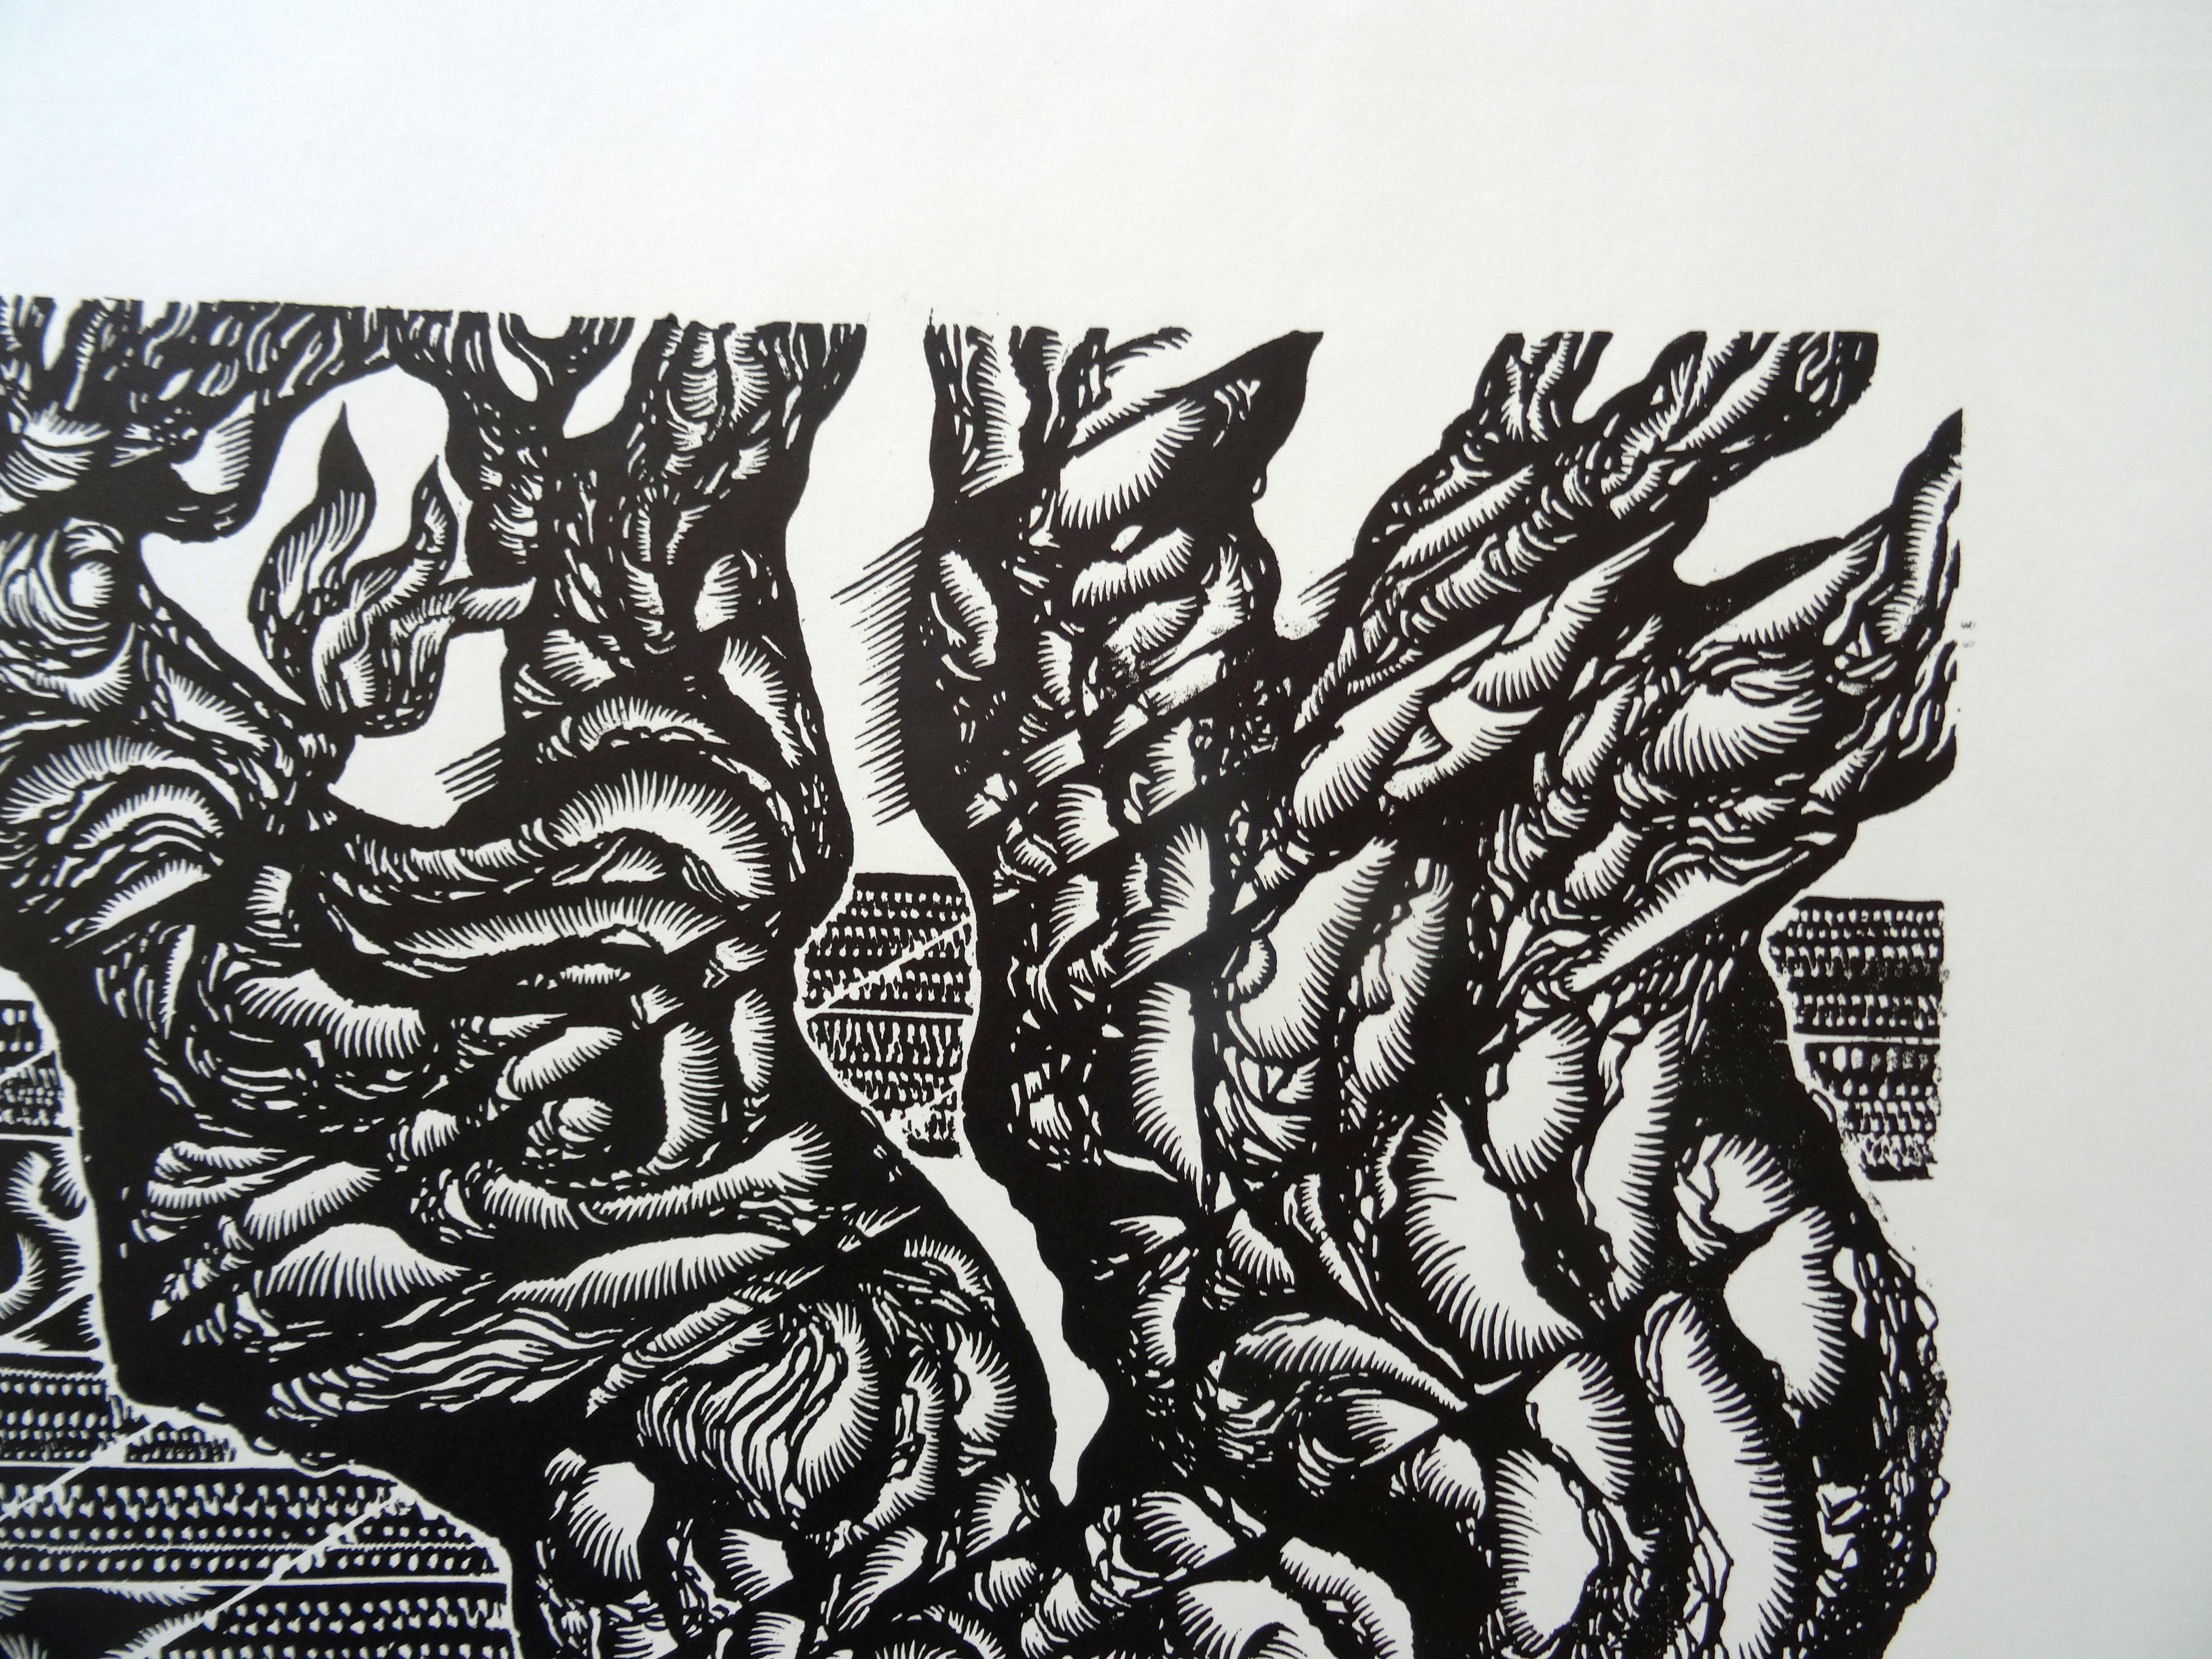 Baum des Lebens. 1982, Papier, Linolschnitt, Druckgröße 50x56 cm; insgesamt 60x65 cm (Geometrische Abstraktion), Print, von Dainis Rozkalns